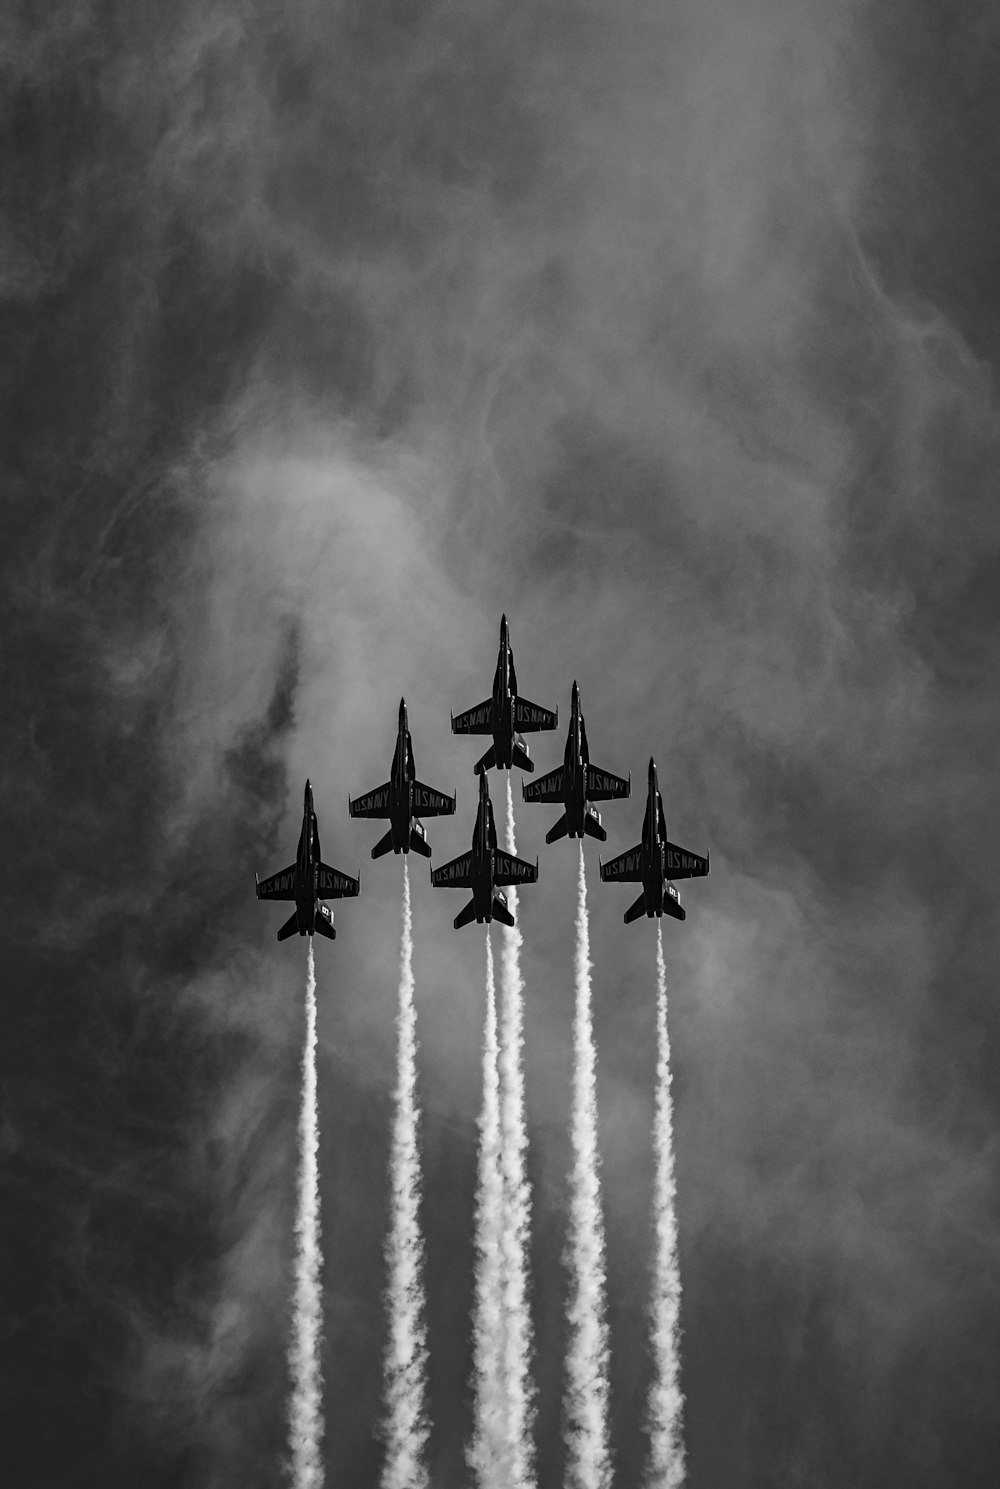 Cuatro aviones de combate en fotografía en escala de grises